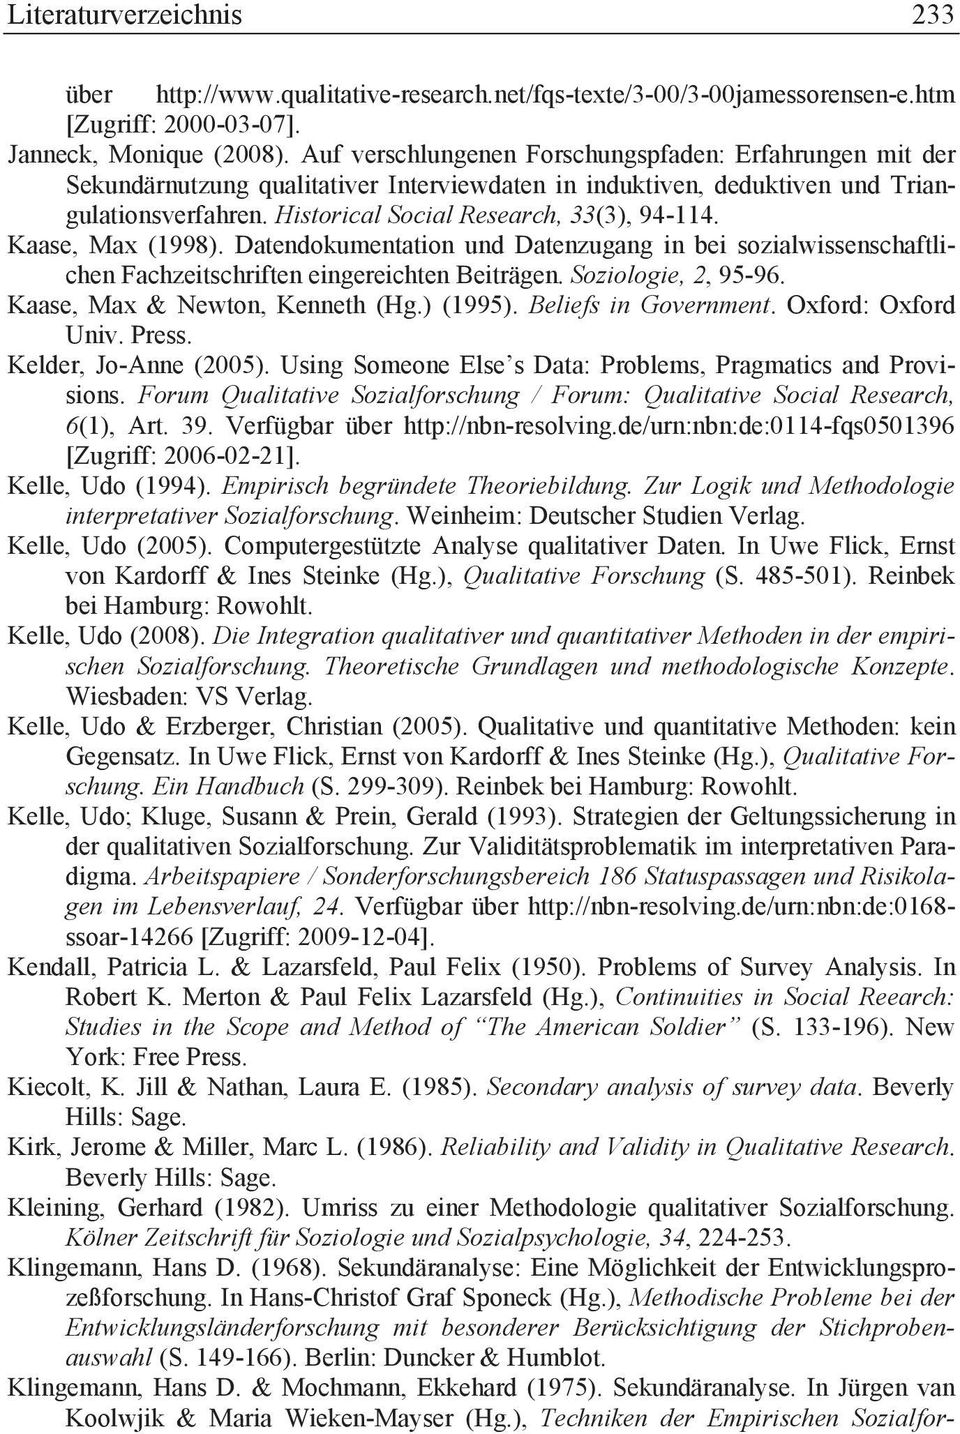 Kaase, Max (1998). Datendokumentation und Datenzugang in bei sozialwissenschaftlichen Fachzeitschriften eingereichten Beiträgen. Soziologie, 2, 95-96. Kaase, Max & Newton, Kenneth (Hg.) (1995).